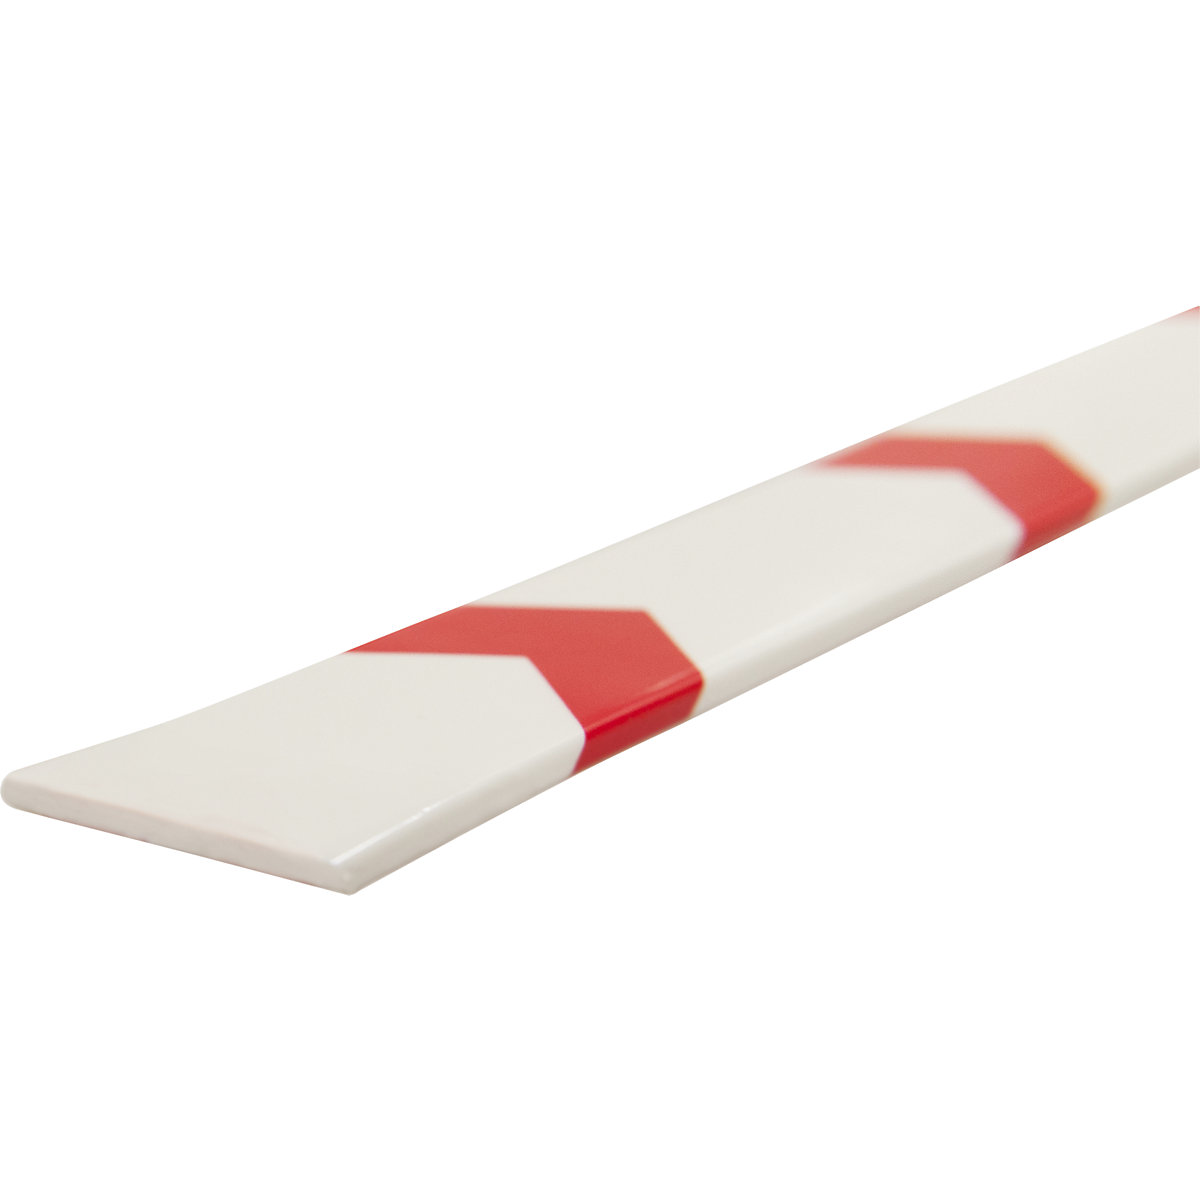 Système d'orientation Knuffi® ONEWAY – SHG, pièce de 1 mètre, réutilisable, rouge/blanc